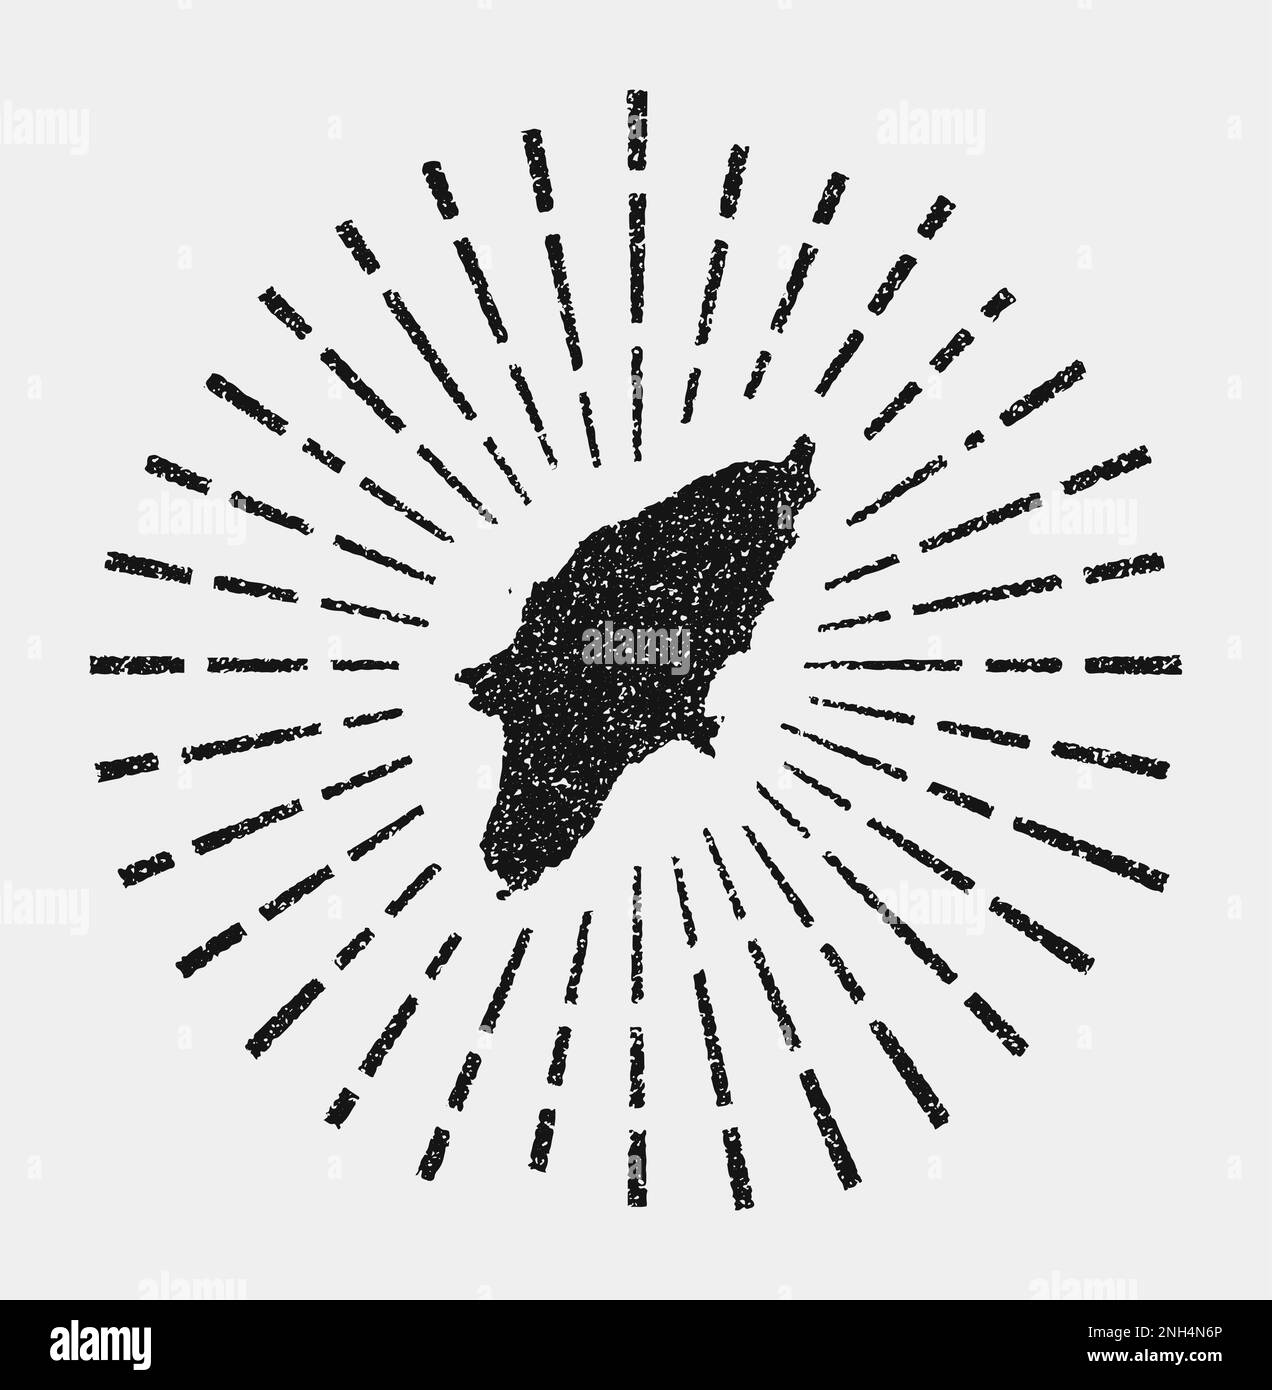 Mappa vintage di Rodi. Il sole grunge scoppiò intorno all'isola. A forma di Rodi nero con raggi solari su sfondo bianco. Illustrazione vettoriale. Illustrazione Vettoriale